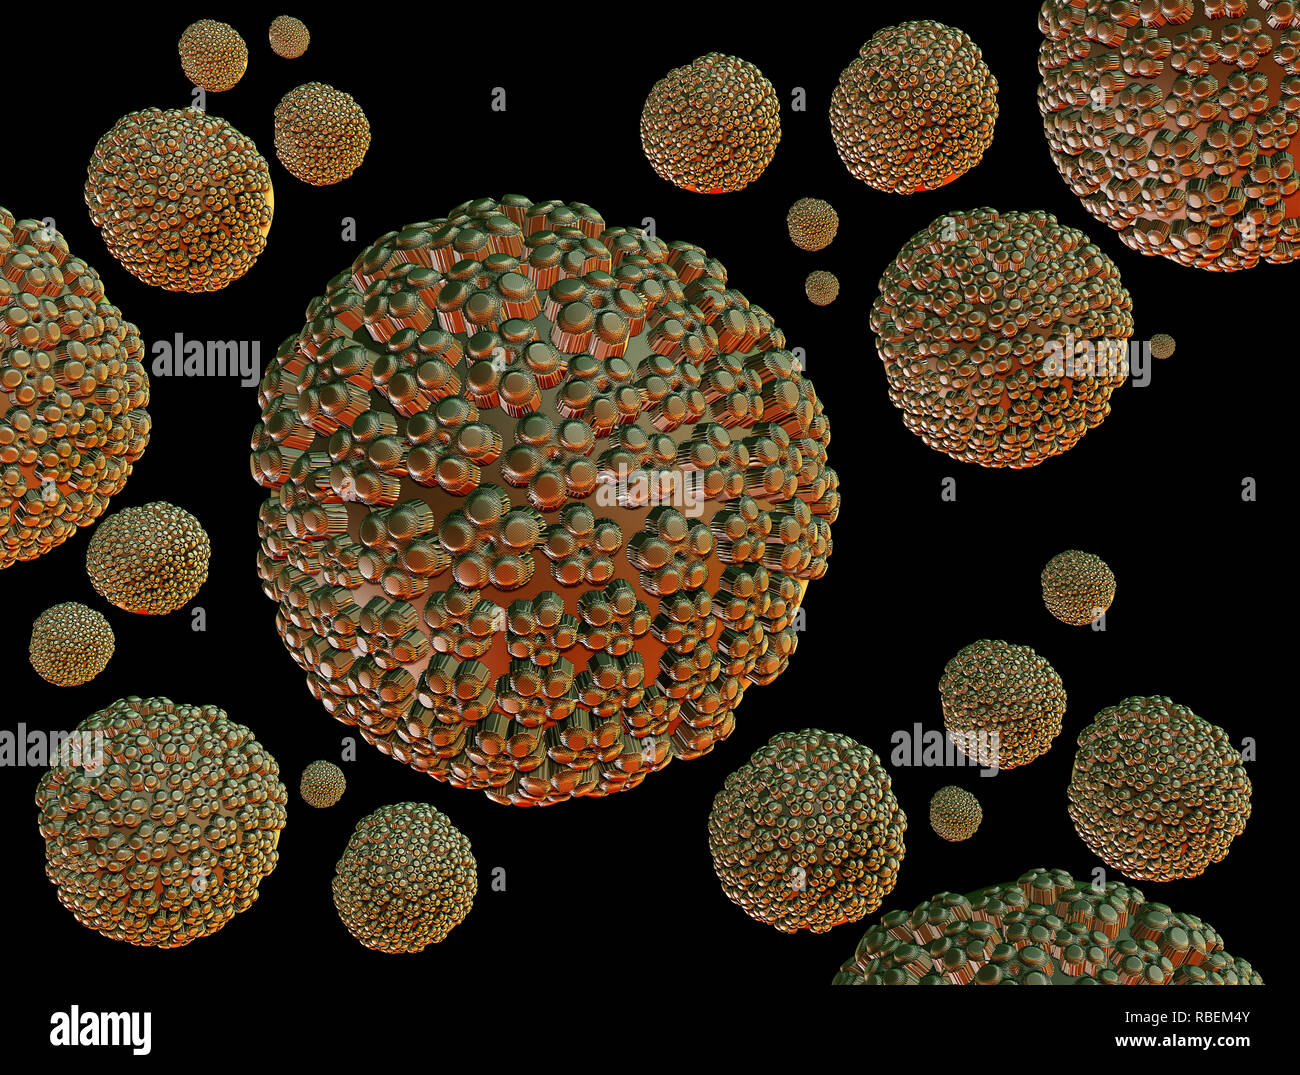 Illustrations Human papillomaviruses Stock Photo